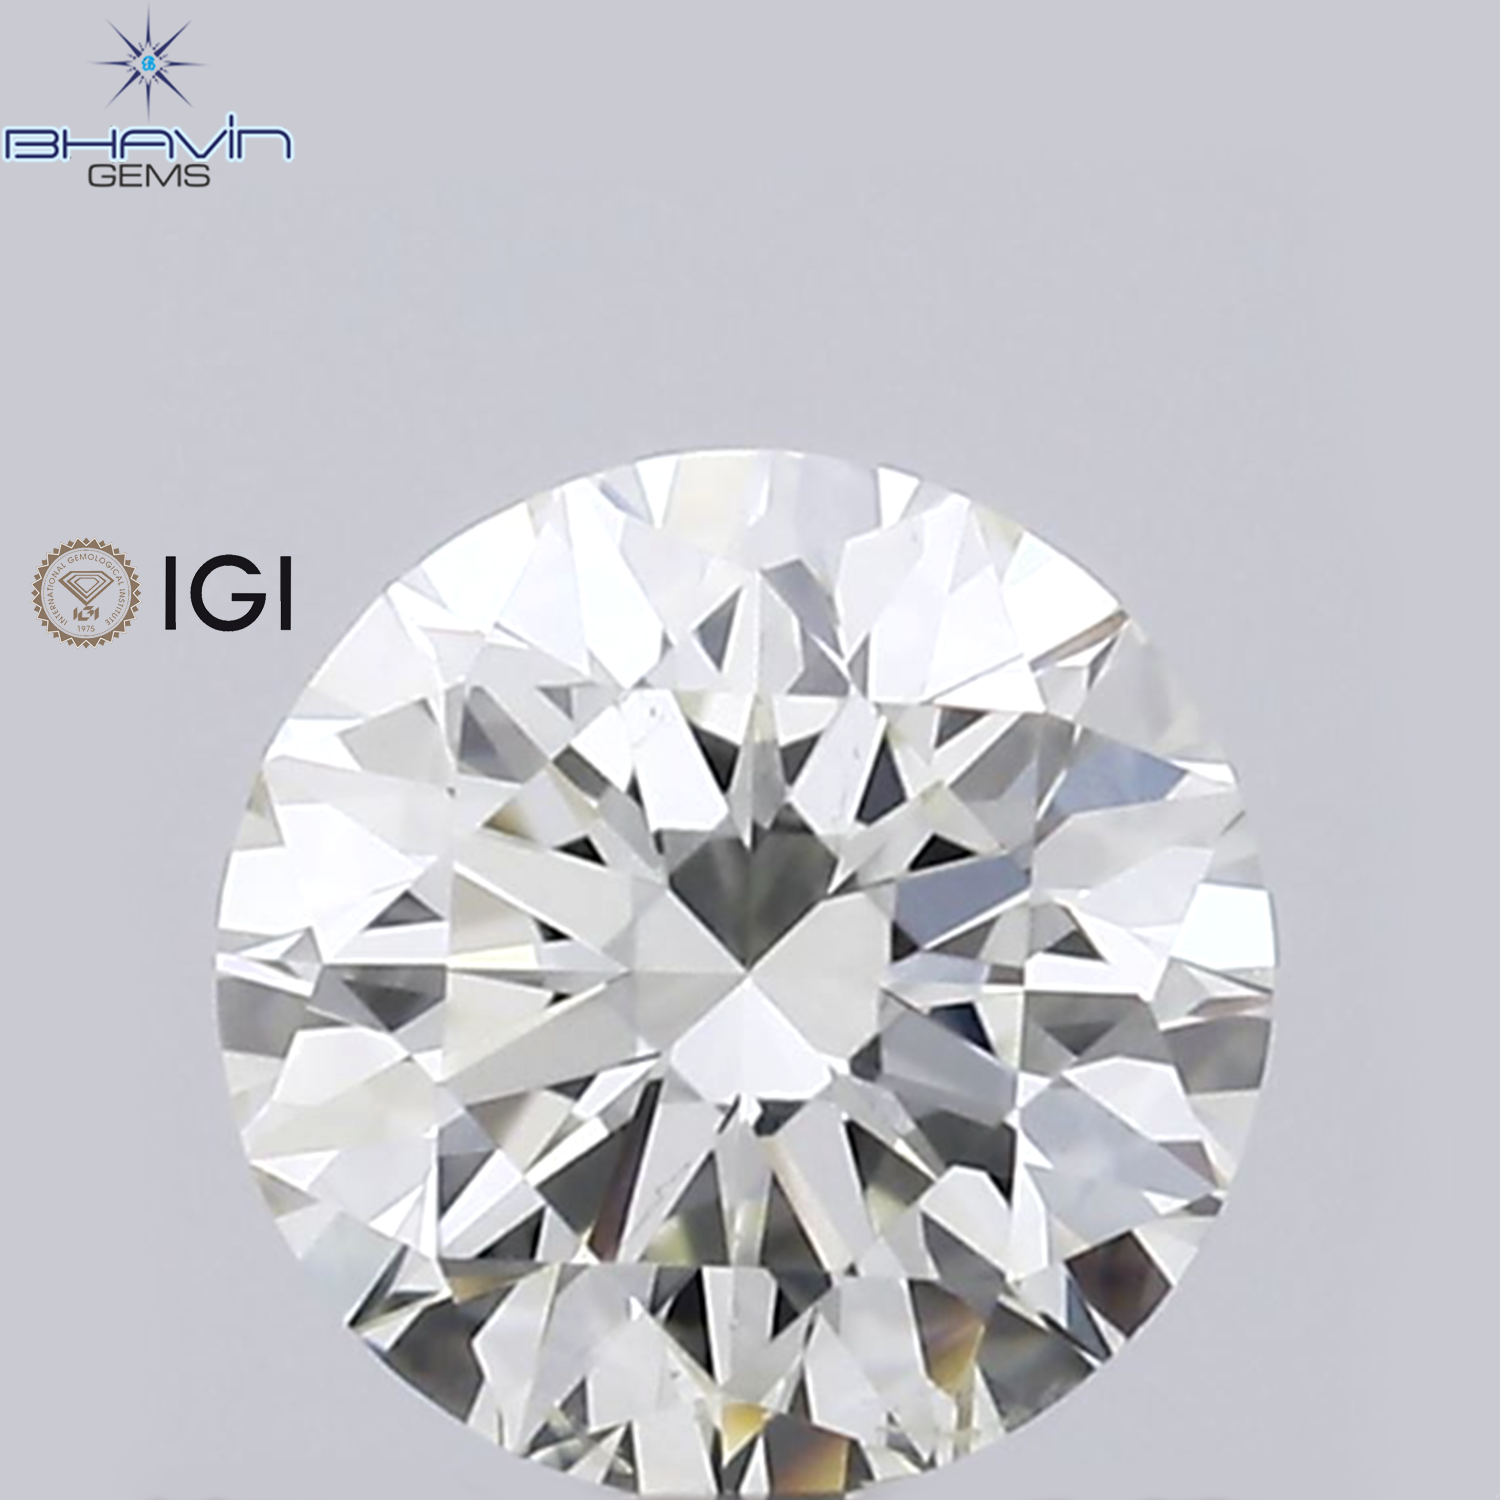 IGI Certified 0.31 CT Round Diamond White(J) Diamond Natural Loose Diamond SI1 Clarity (5.34 MM)